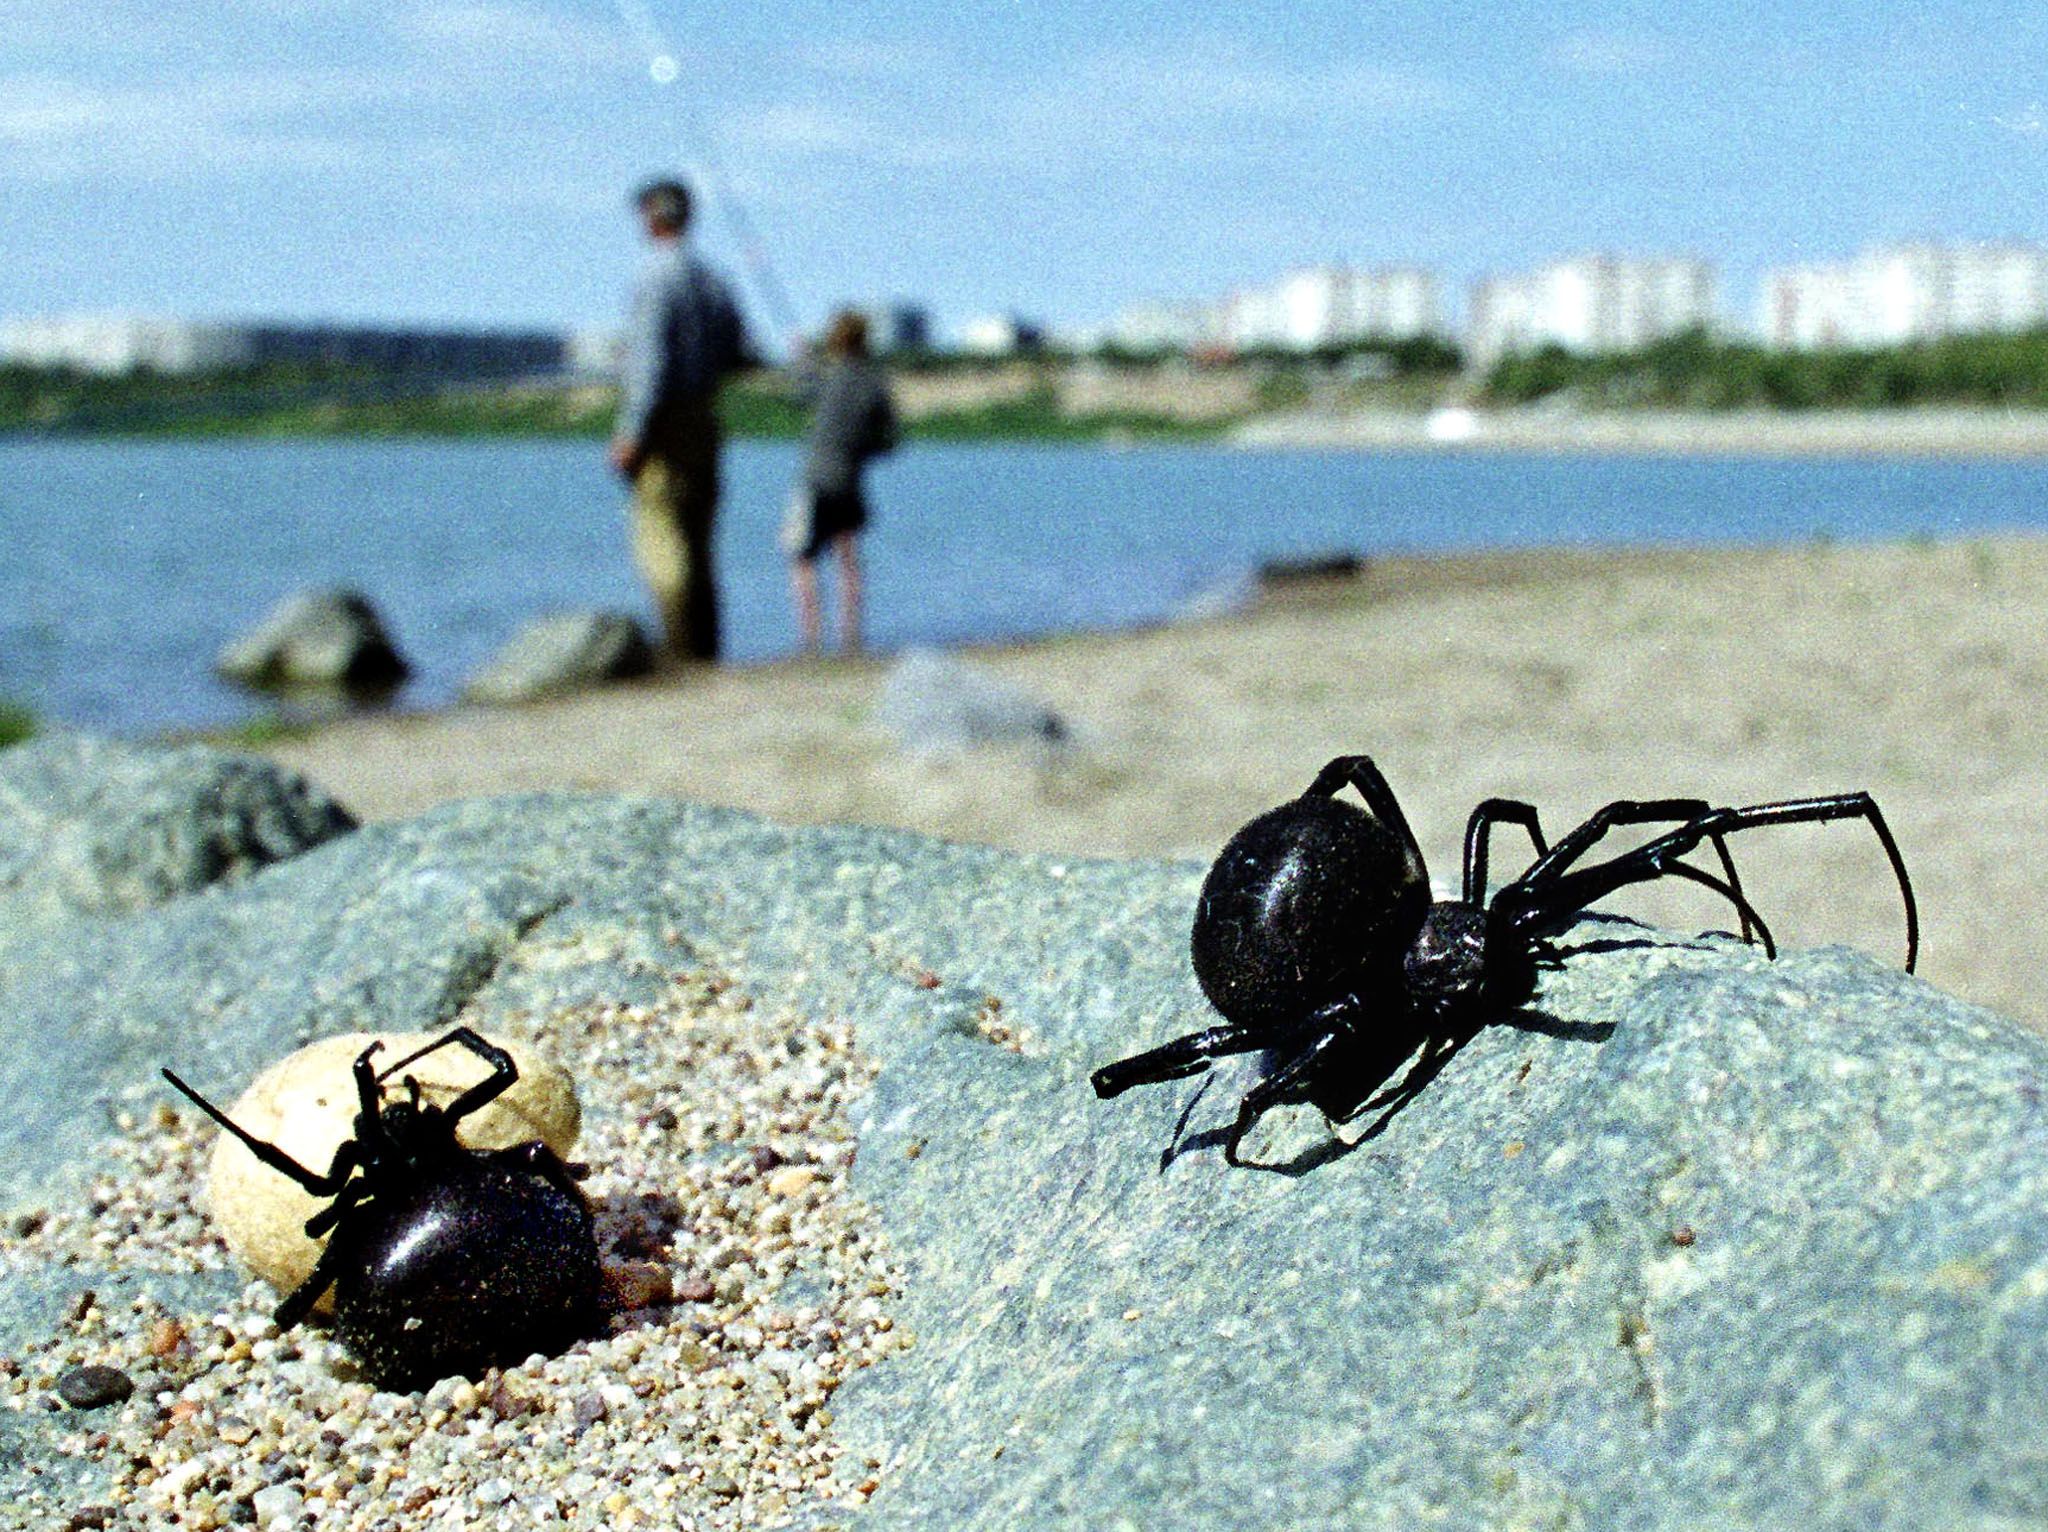 Black Widow Spider Bites Massachusetts Child Parents Issue Warning